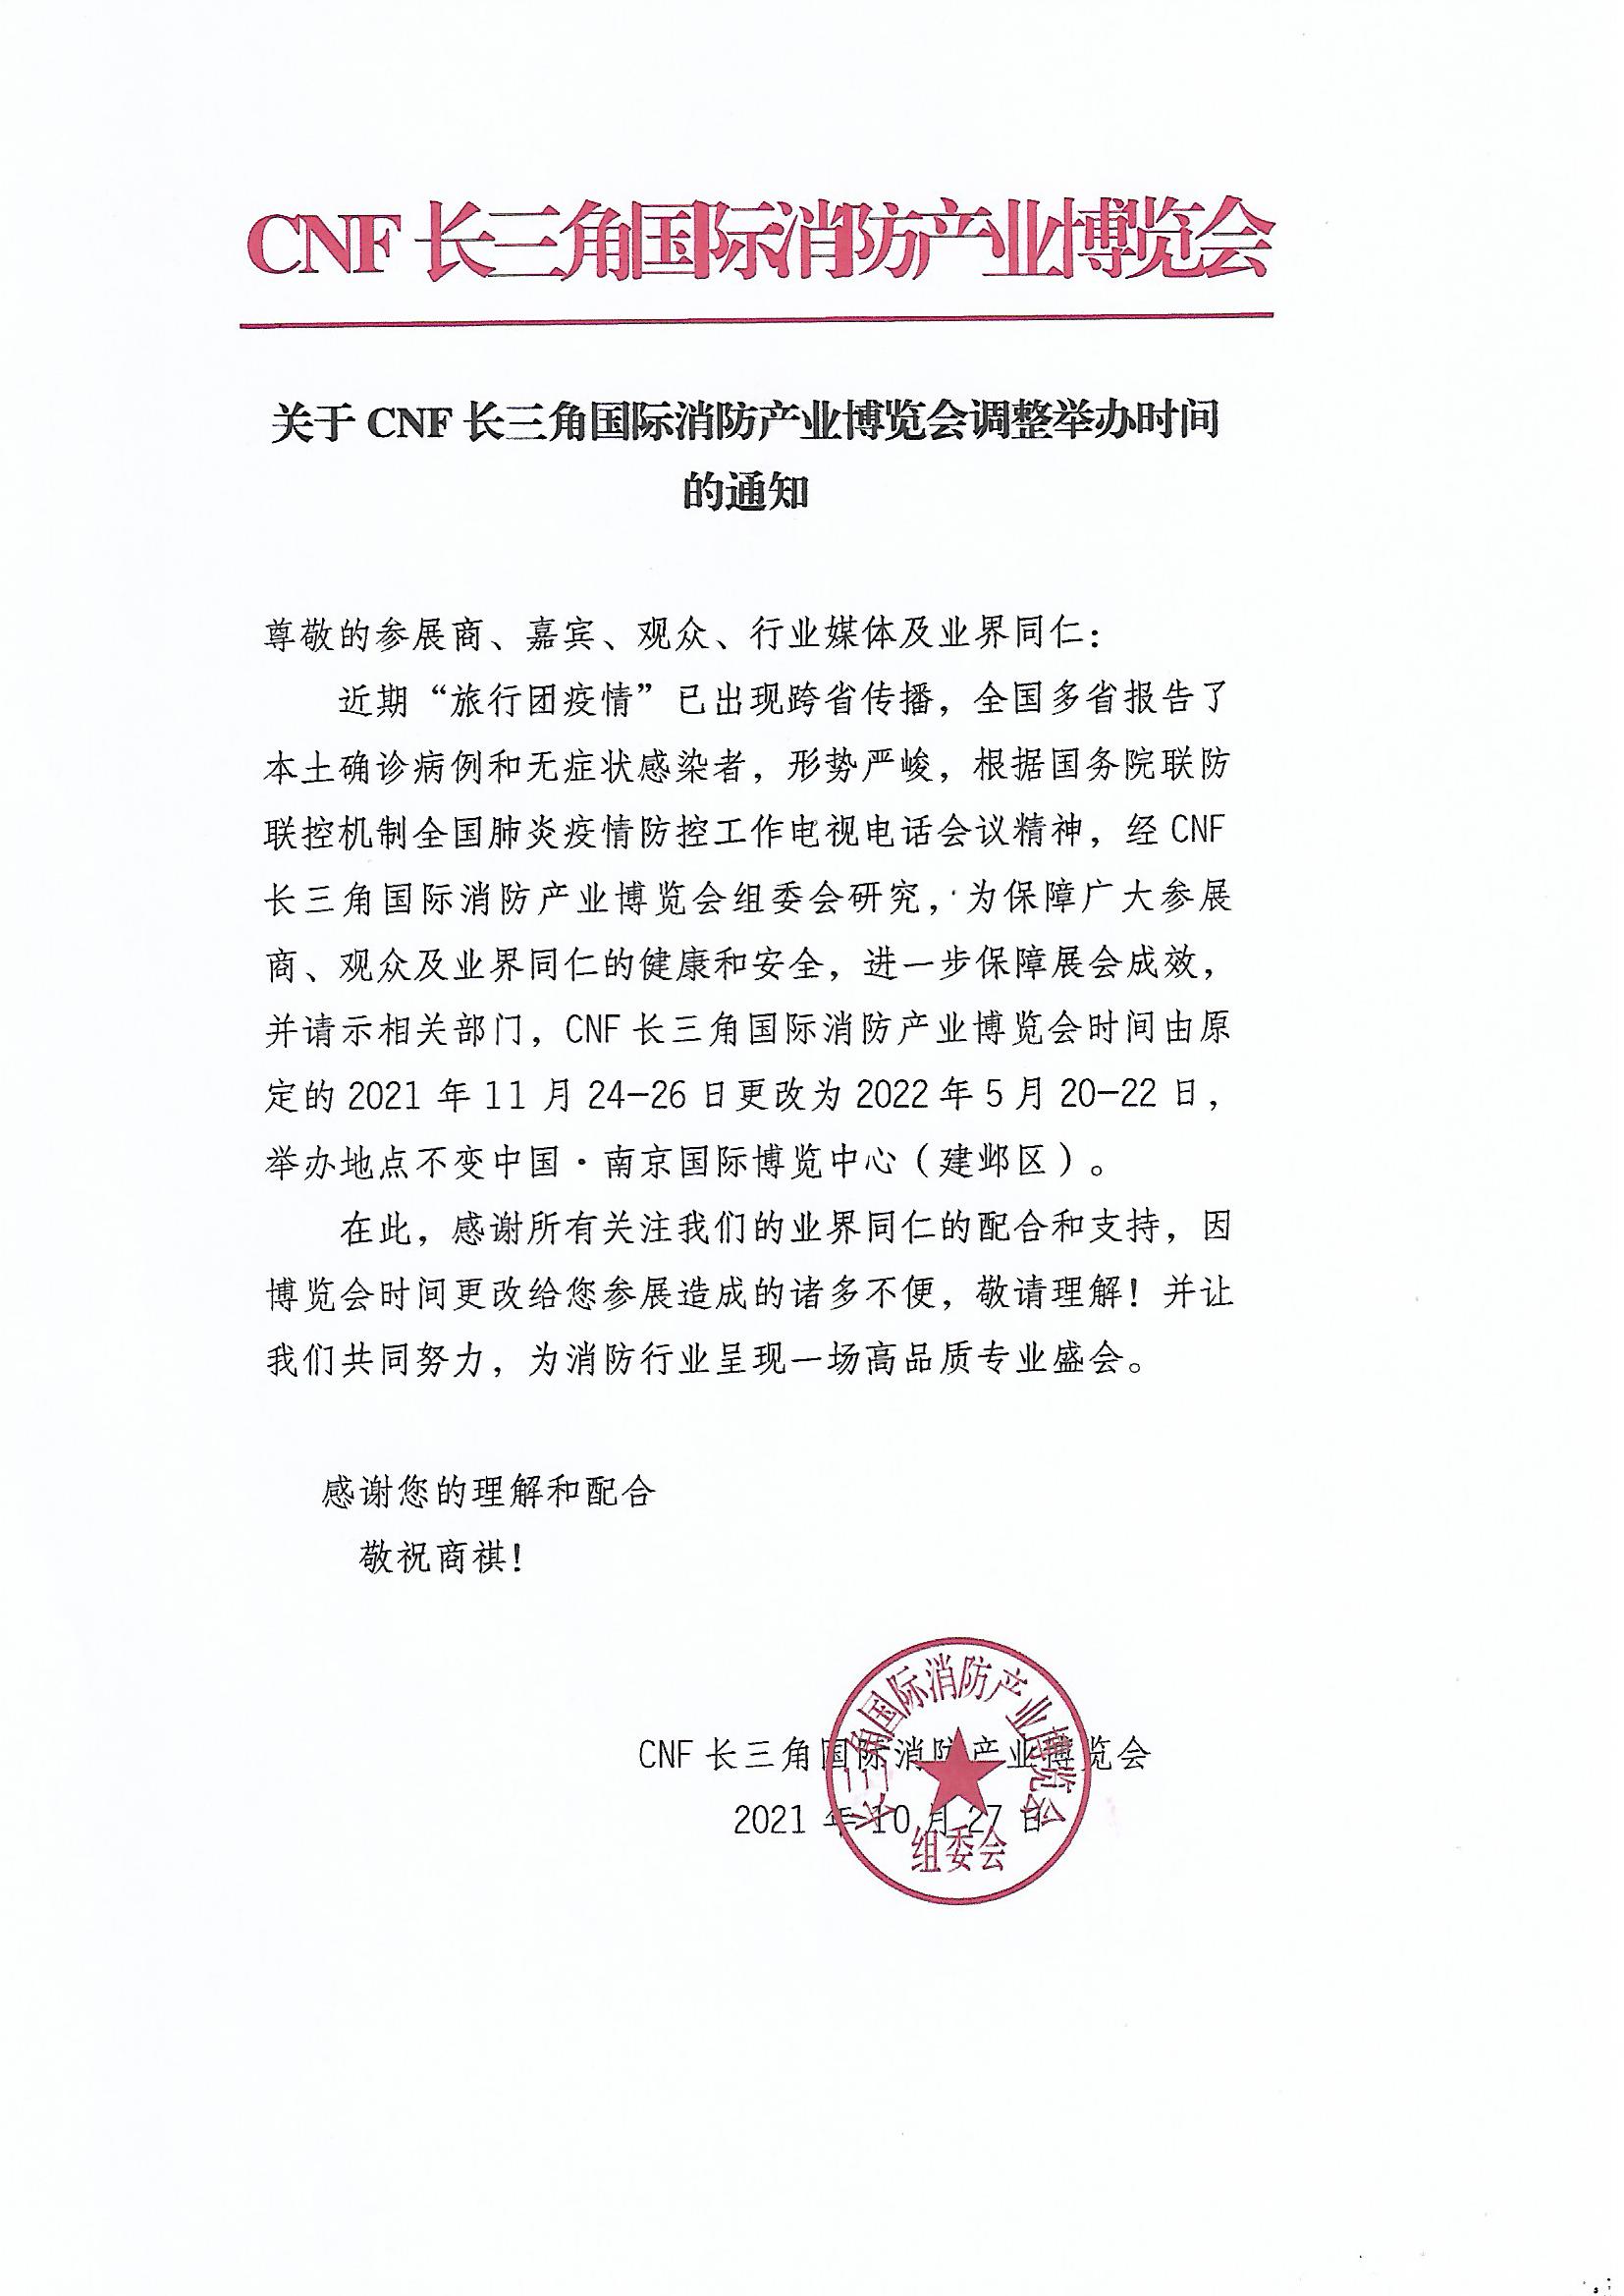 延期通知–CNF长三角国际消防产业博览会